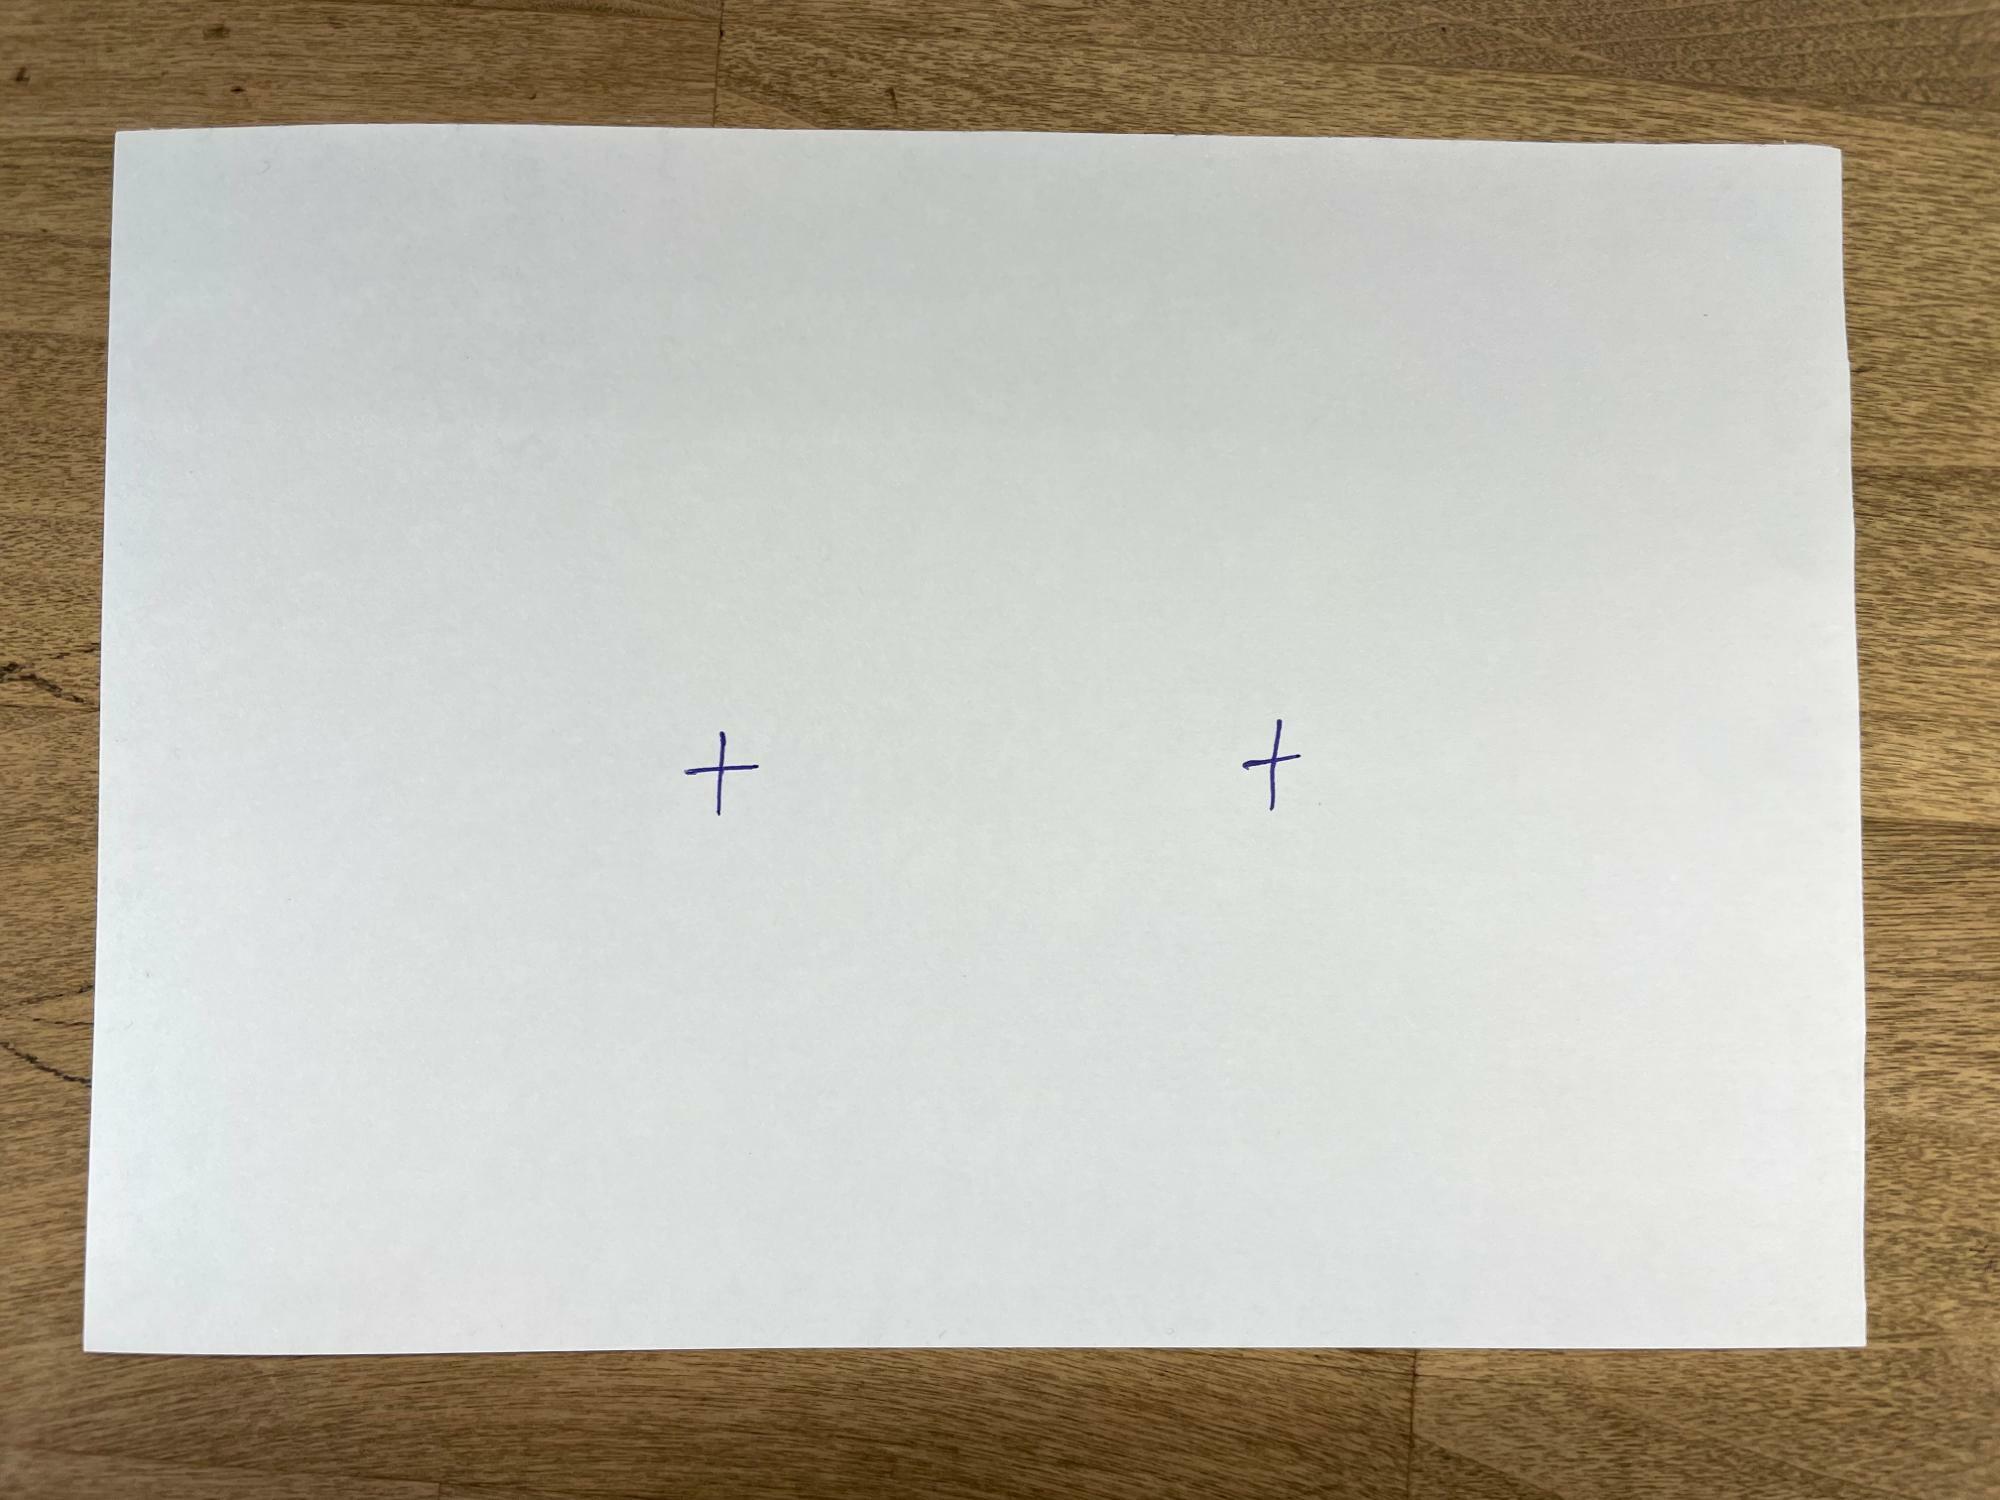 Ａ６サイズぐらいの紙を６分割する。アバウトに十字をかいて分割